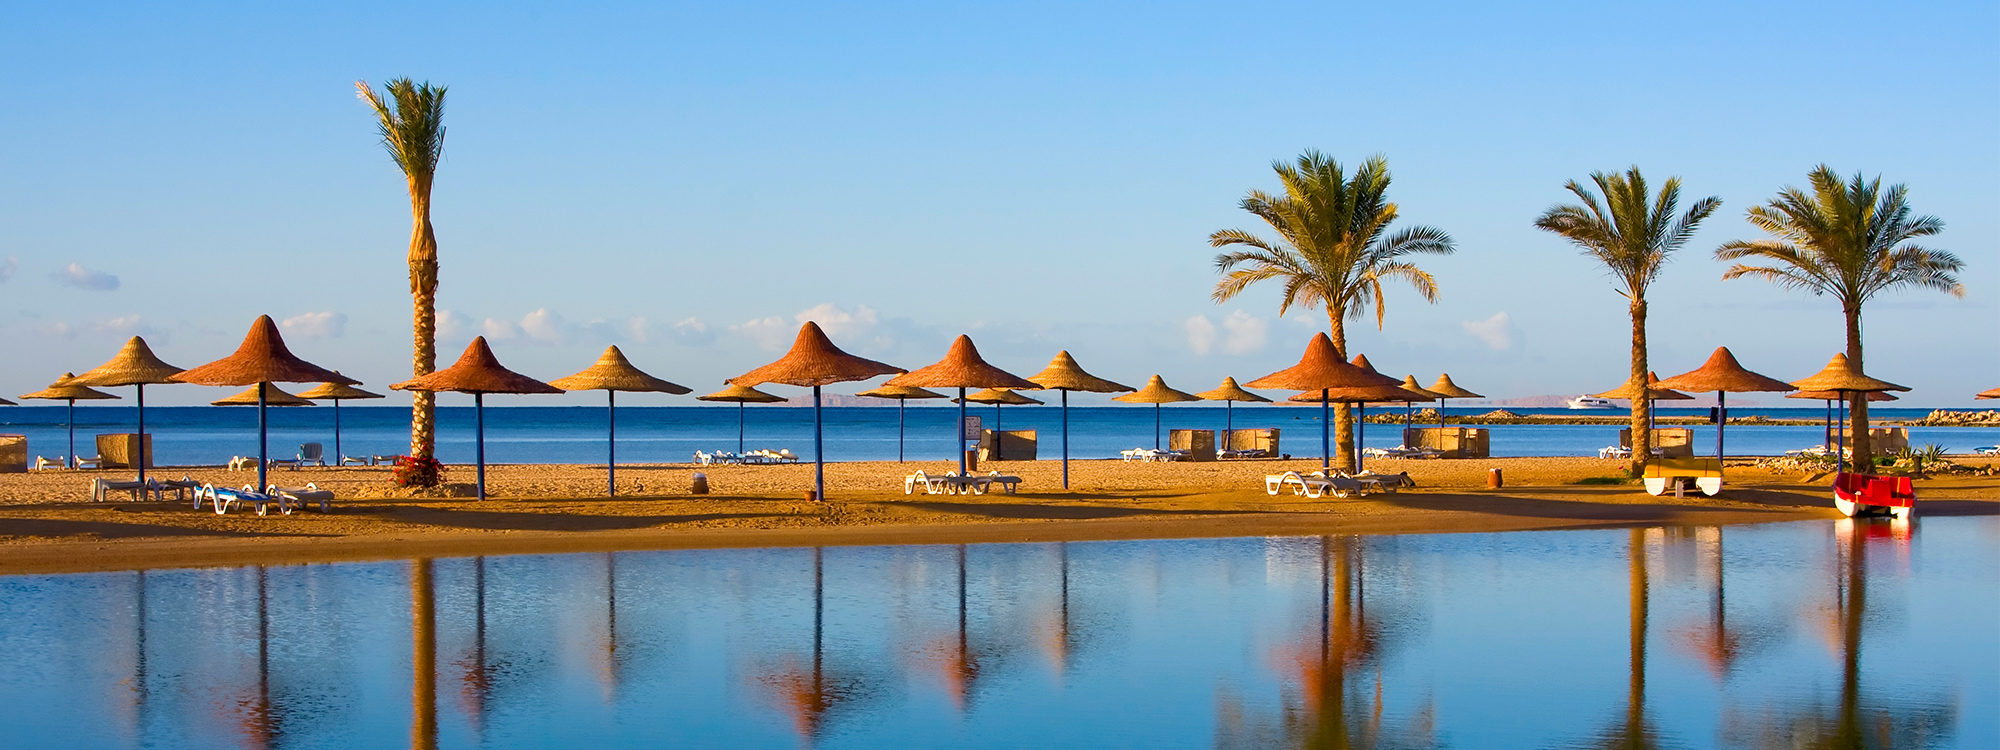 Ägypten, Sunny Days Mirette Family Resort vom 2022-05-28 bis 2022-06-04 für 322 EUR p.P.